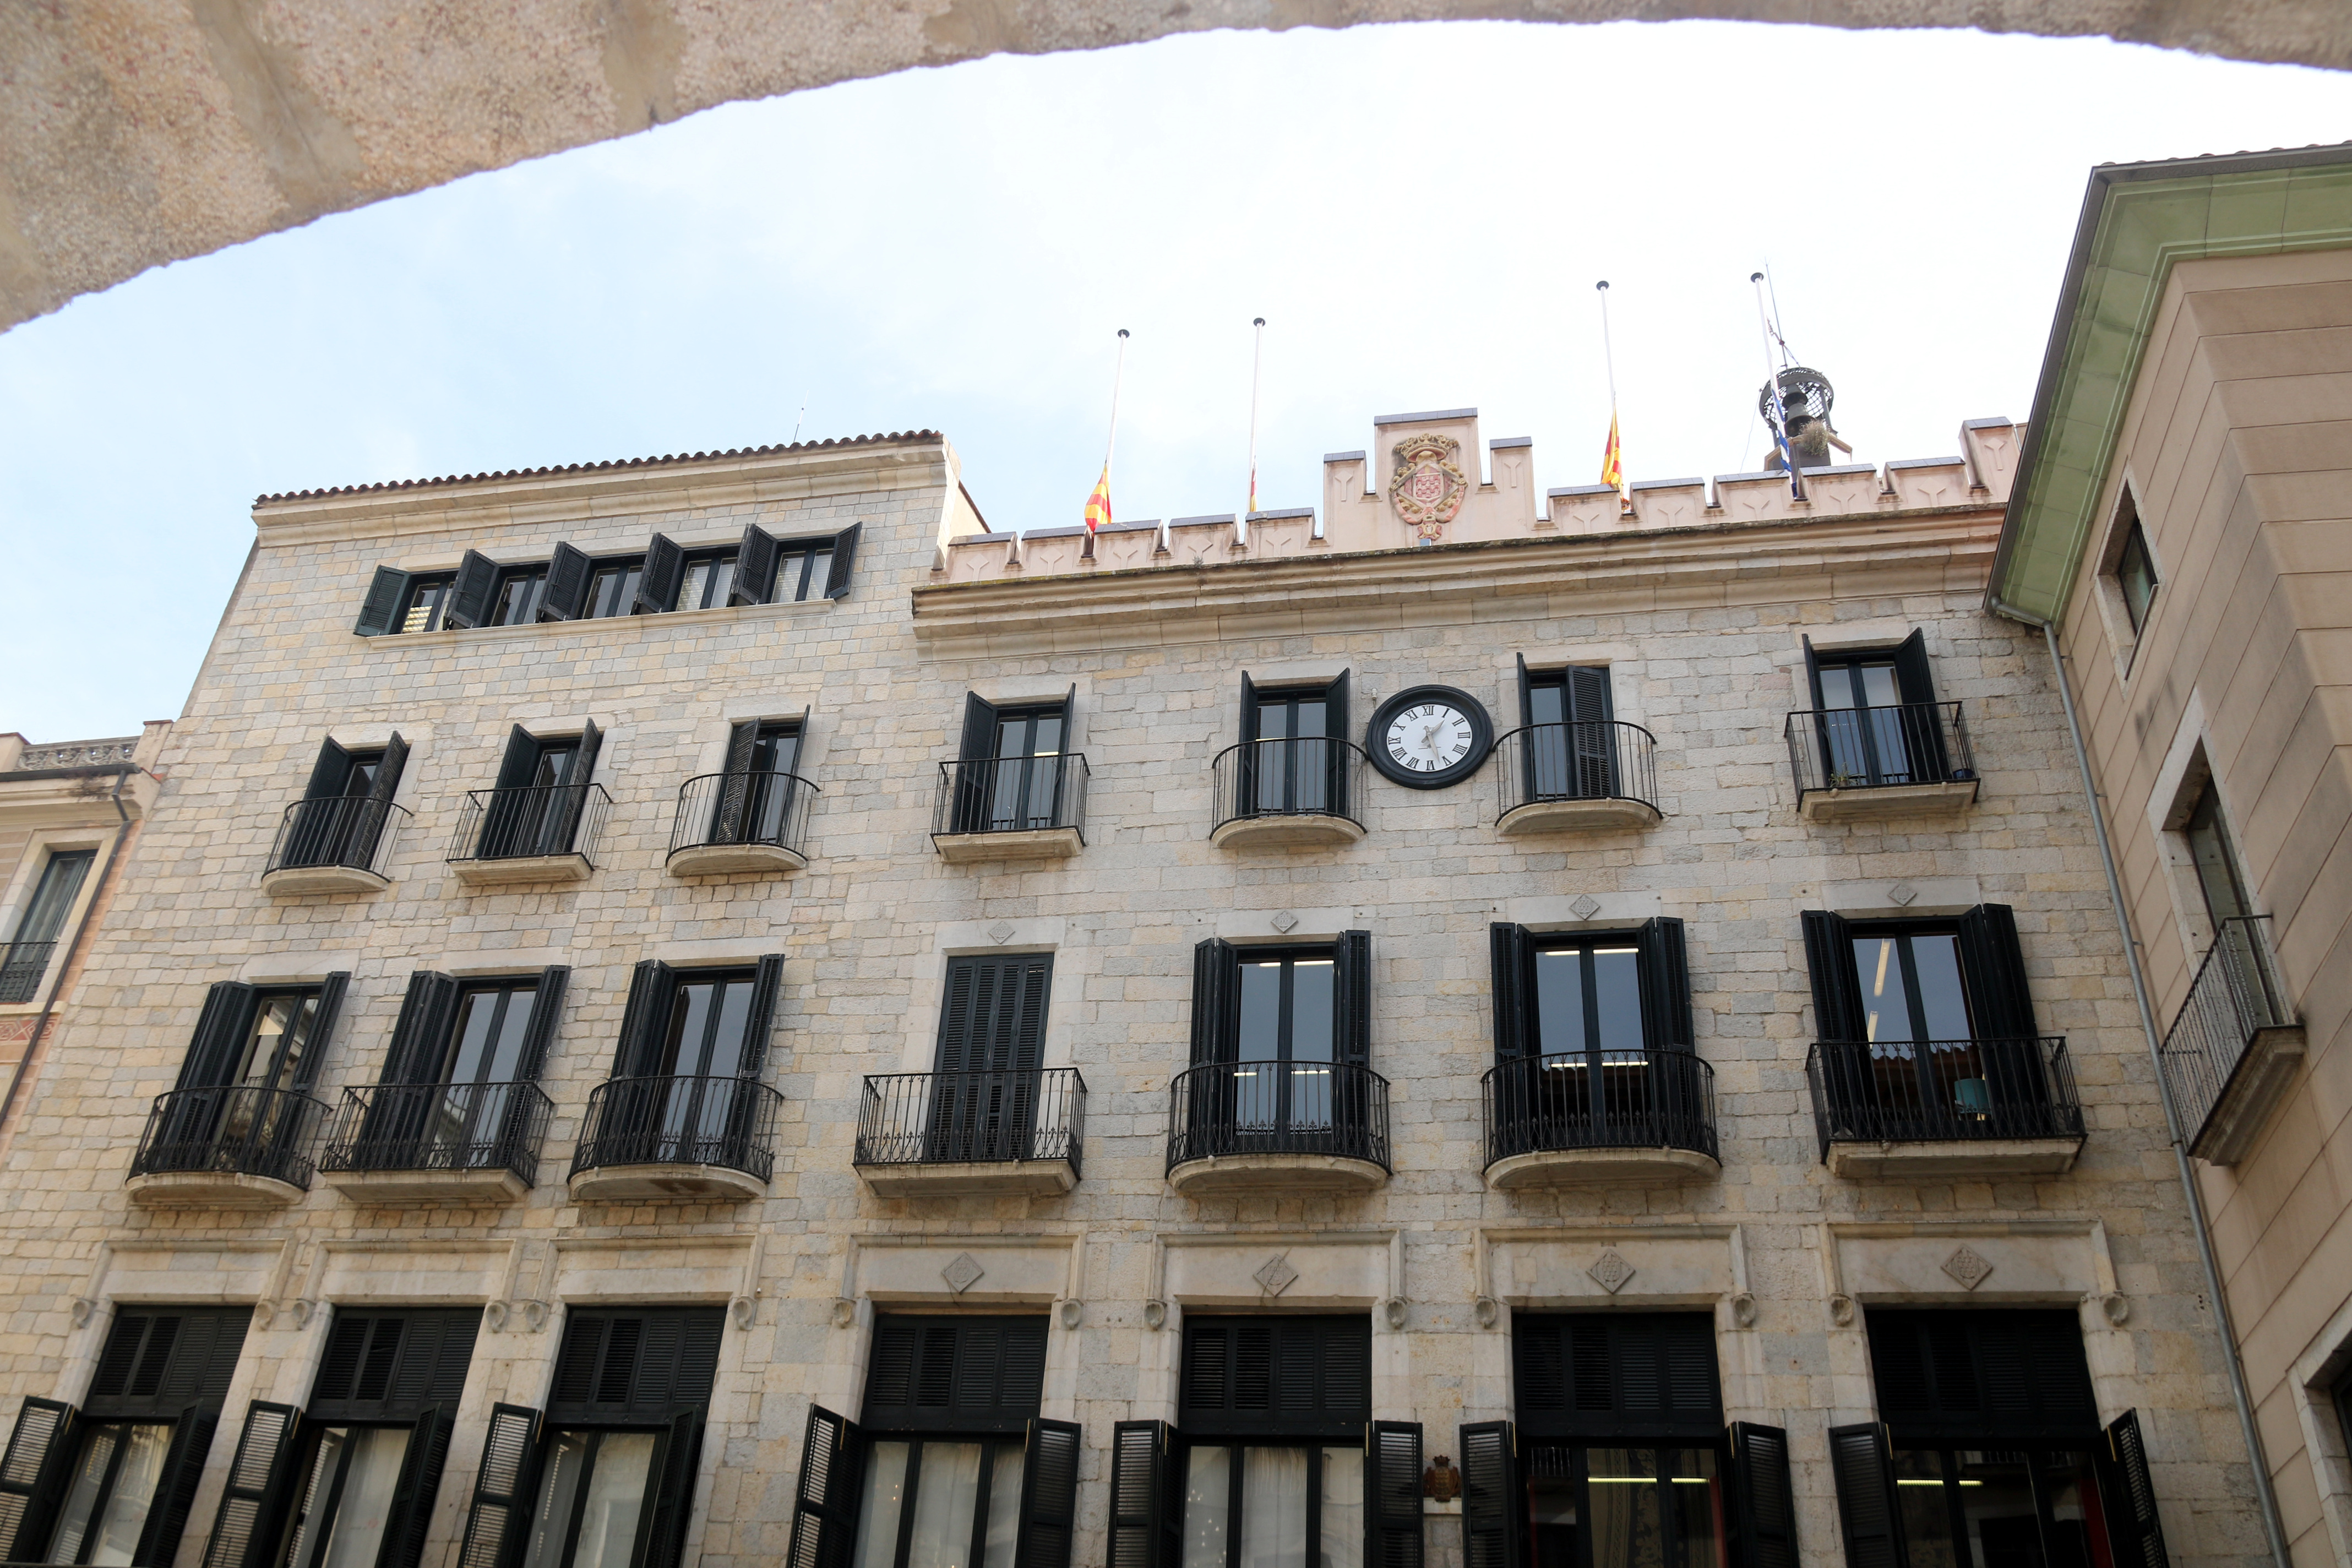 Girona dedicarà un espai públic de la ciutat al filòsof i polític Josep Maria Terricabras